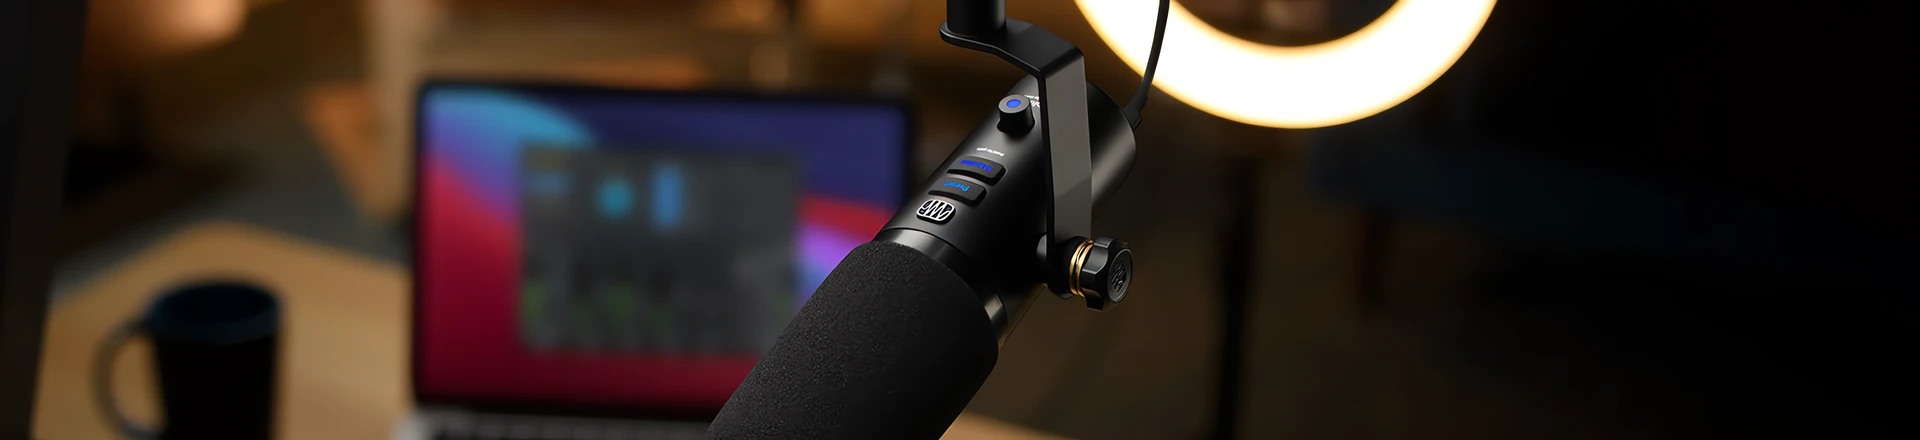 PreSonus Revelator - mikrofon USB i interfejs audio. Zestaw idealny do podcastu